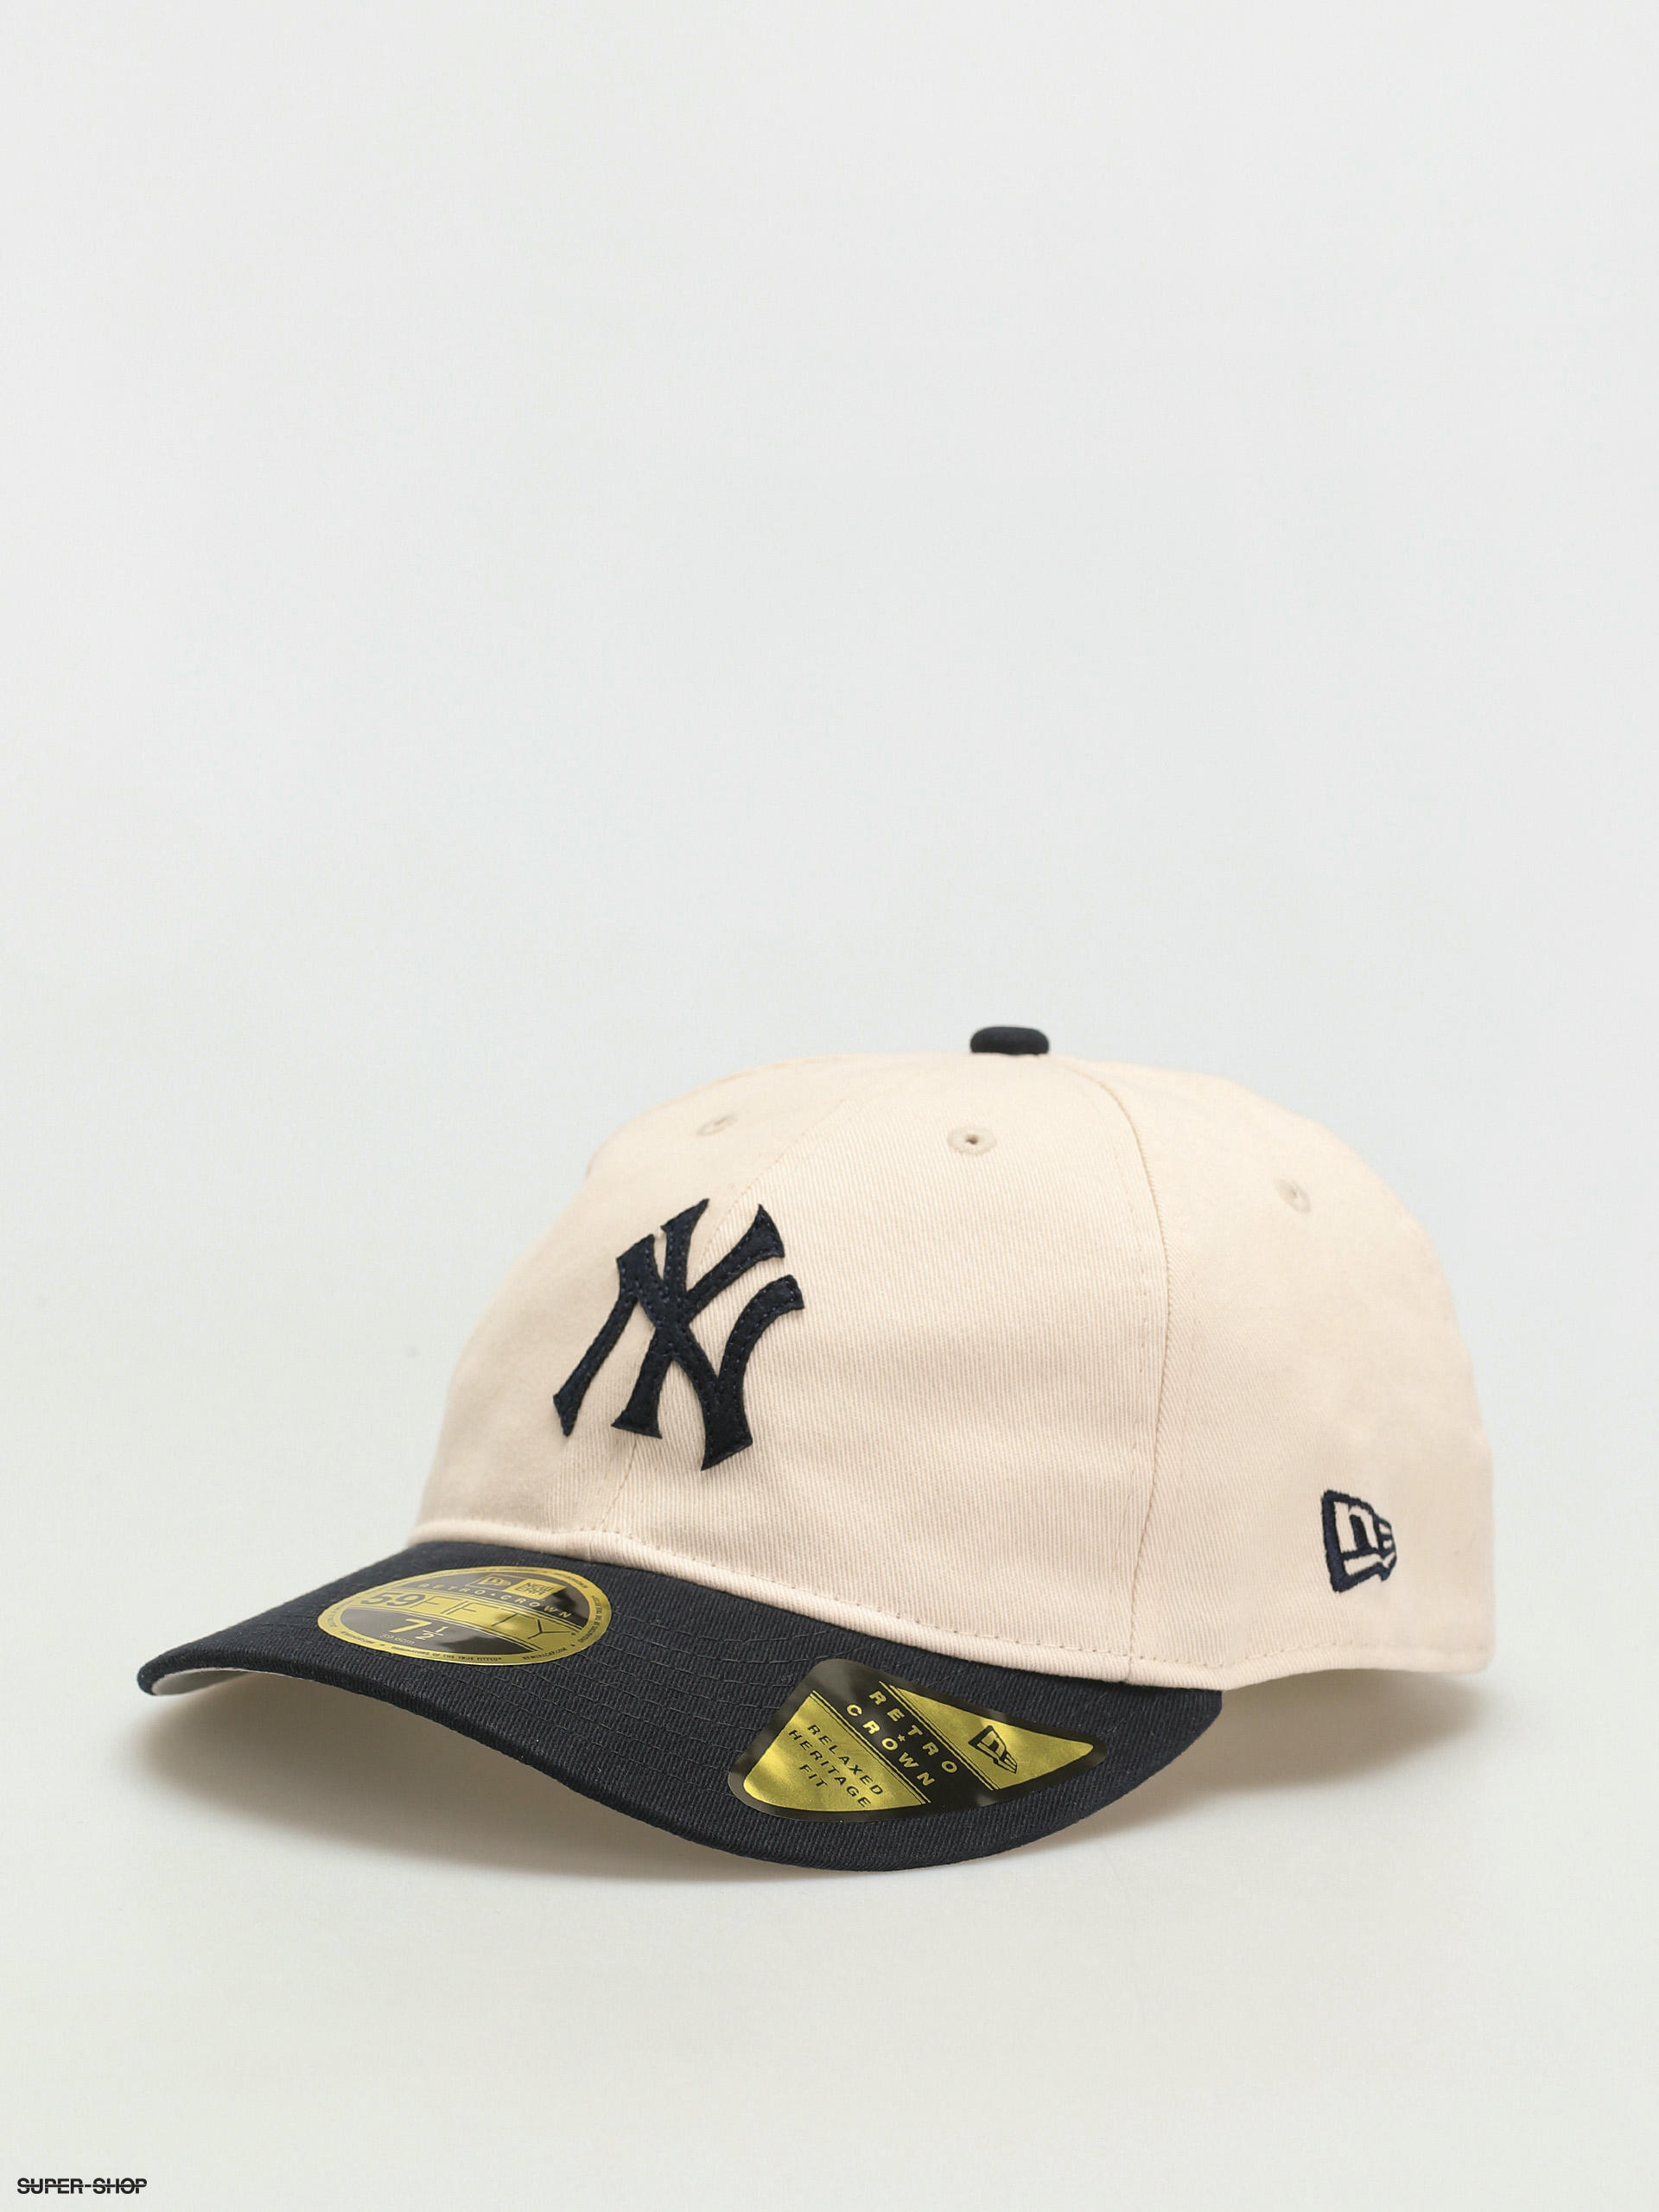 caravan Badkamer verhaal New Era Coops 59Fifty Rc New York Yankees Cap (navy/beige)